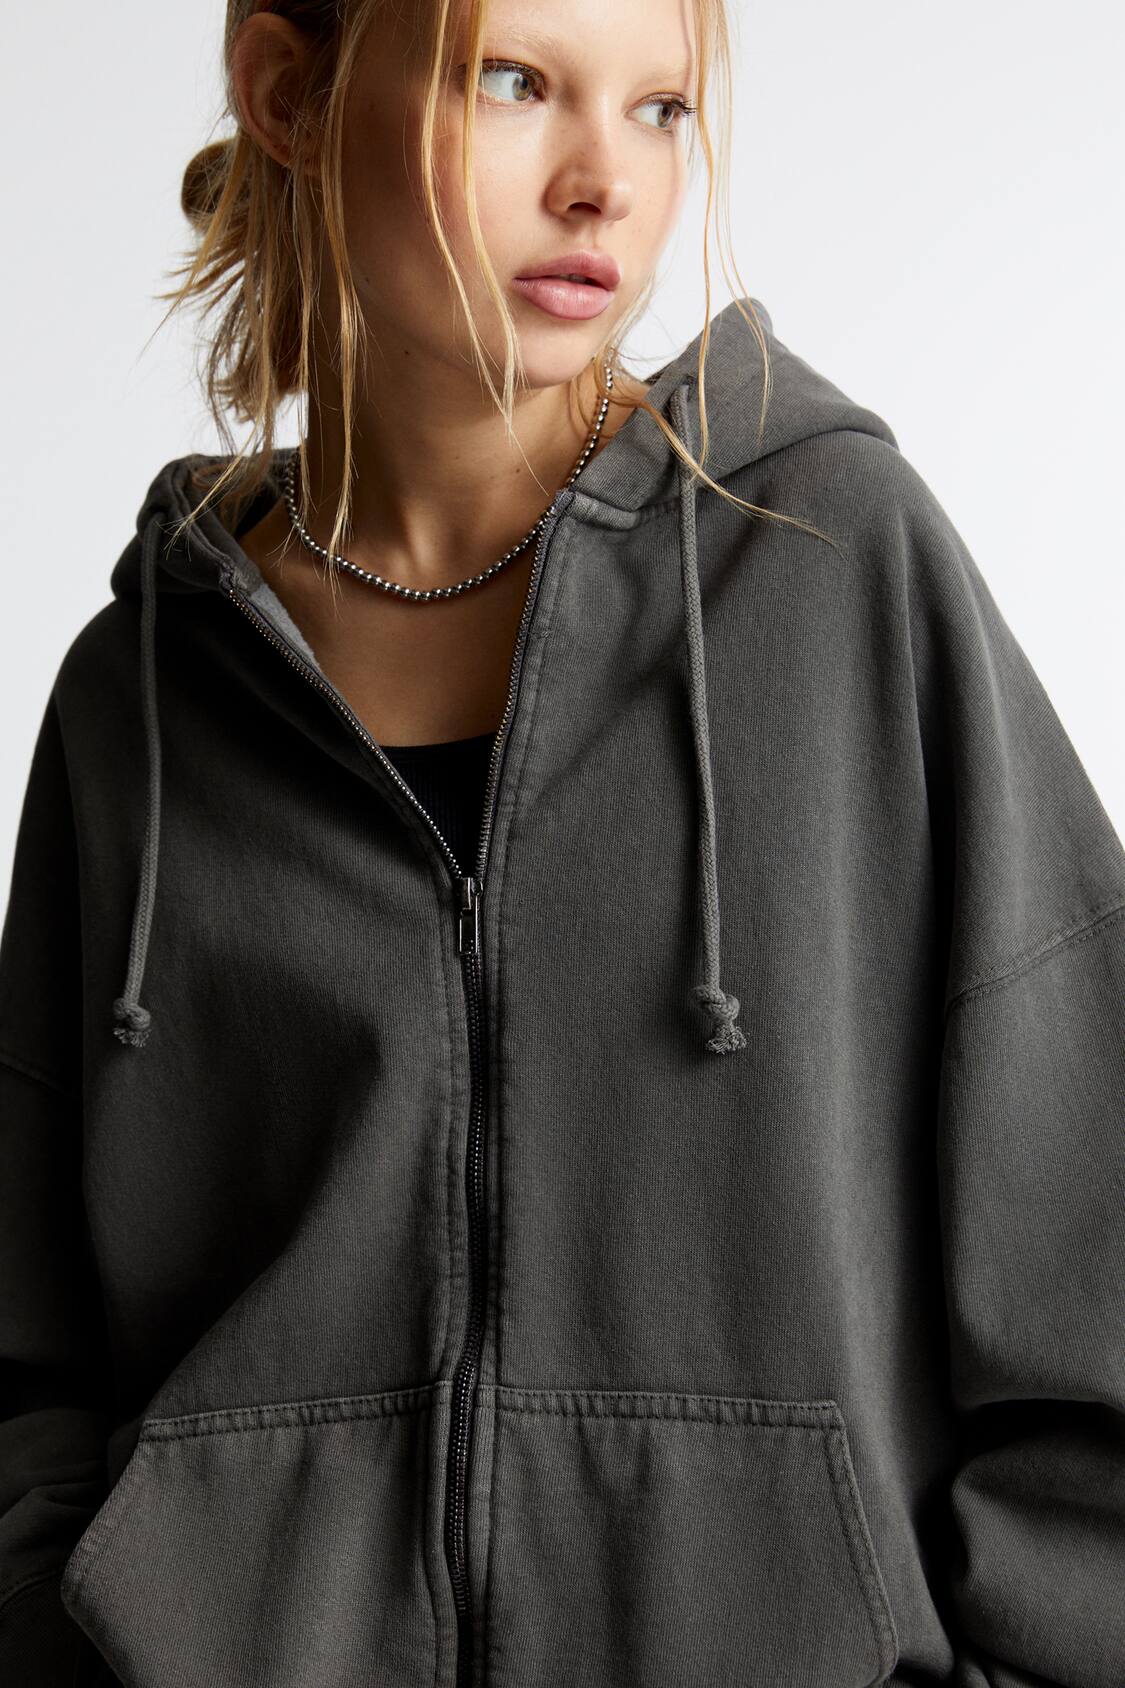 Oversized zip-up fleece hoodie, Twik, Women's Sweatshirts & Hoodies